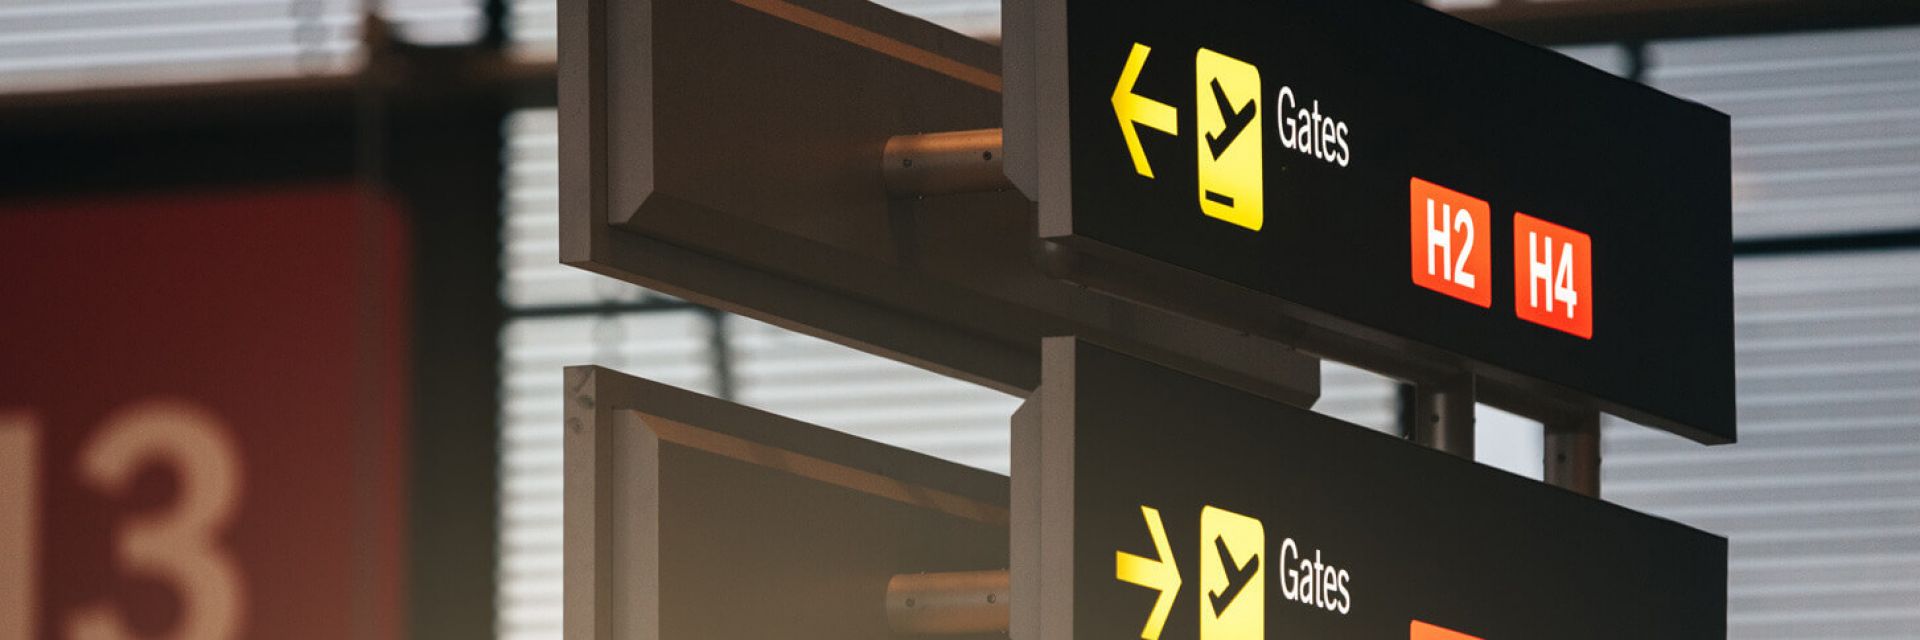 Portão de embarque: como encontrá-lo no aeroporto?